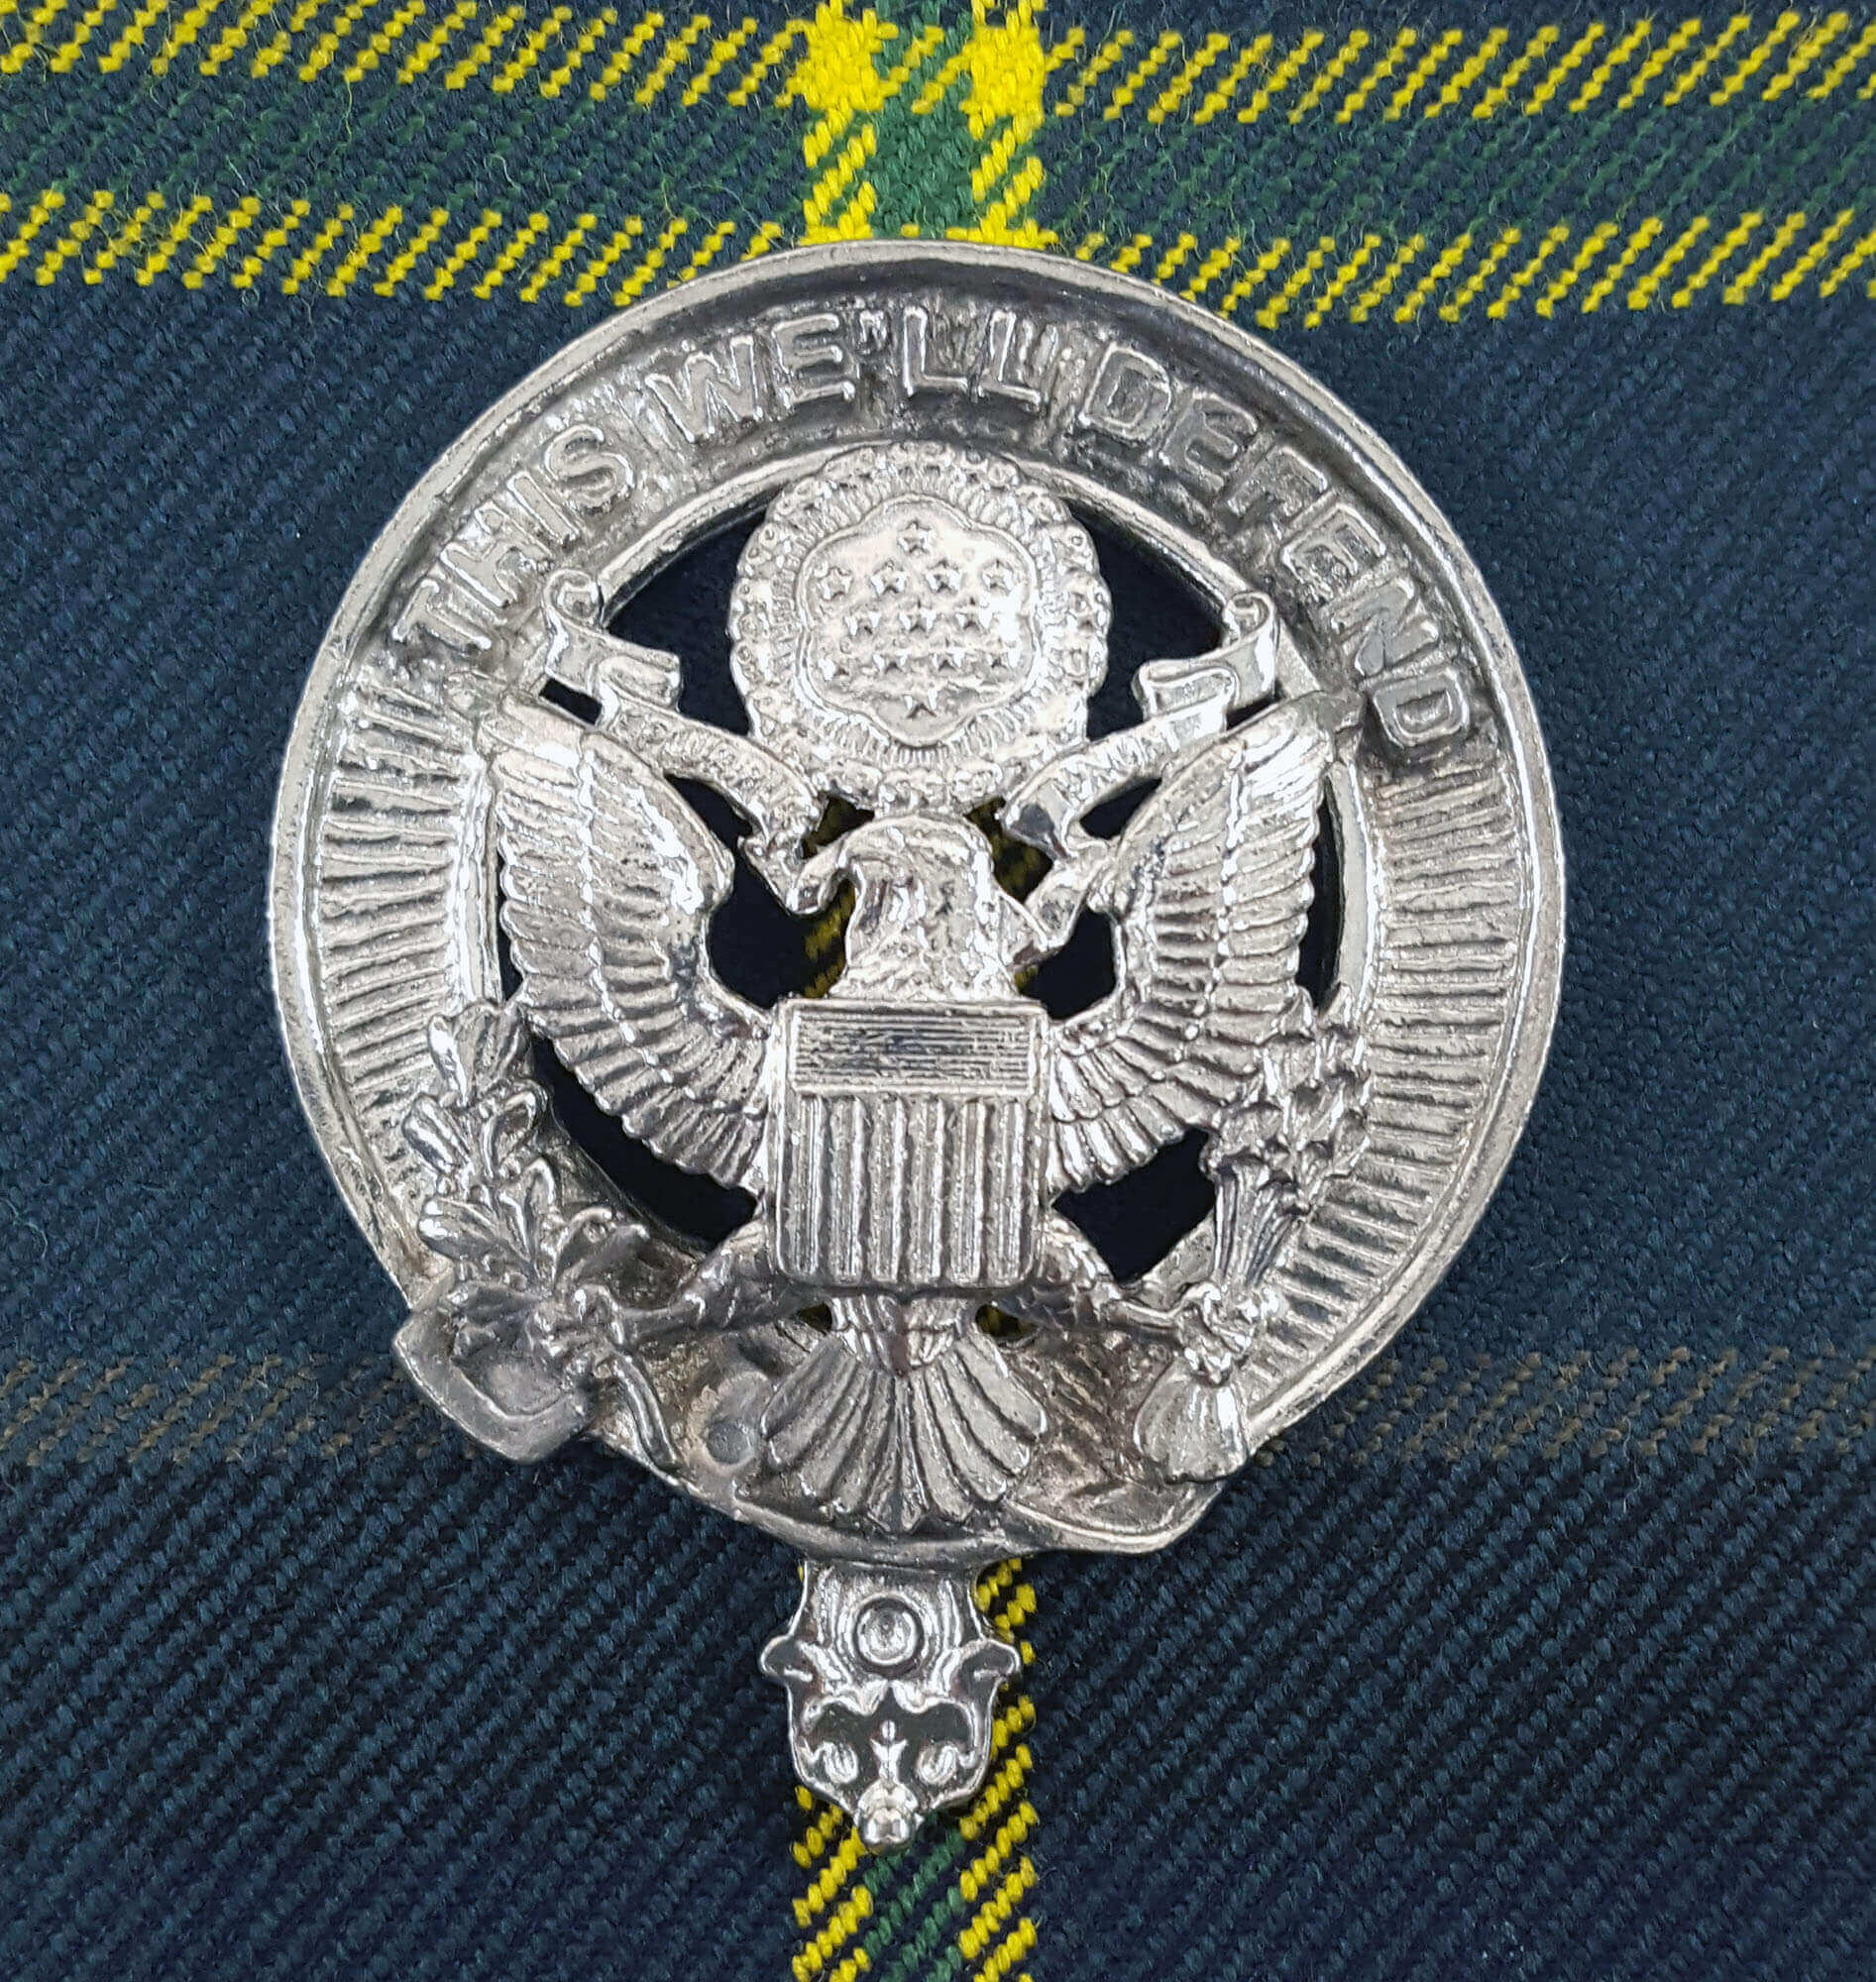 U.S. Army Pewter Cap Badge/Brooch